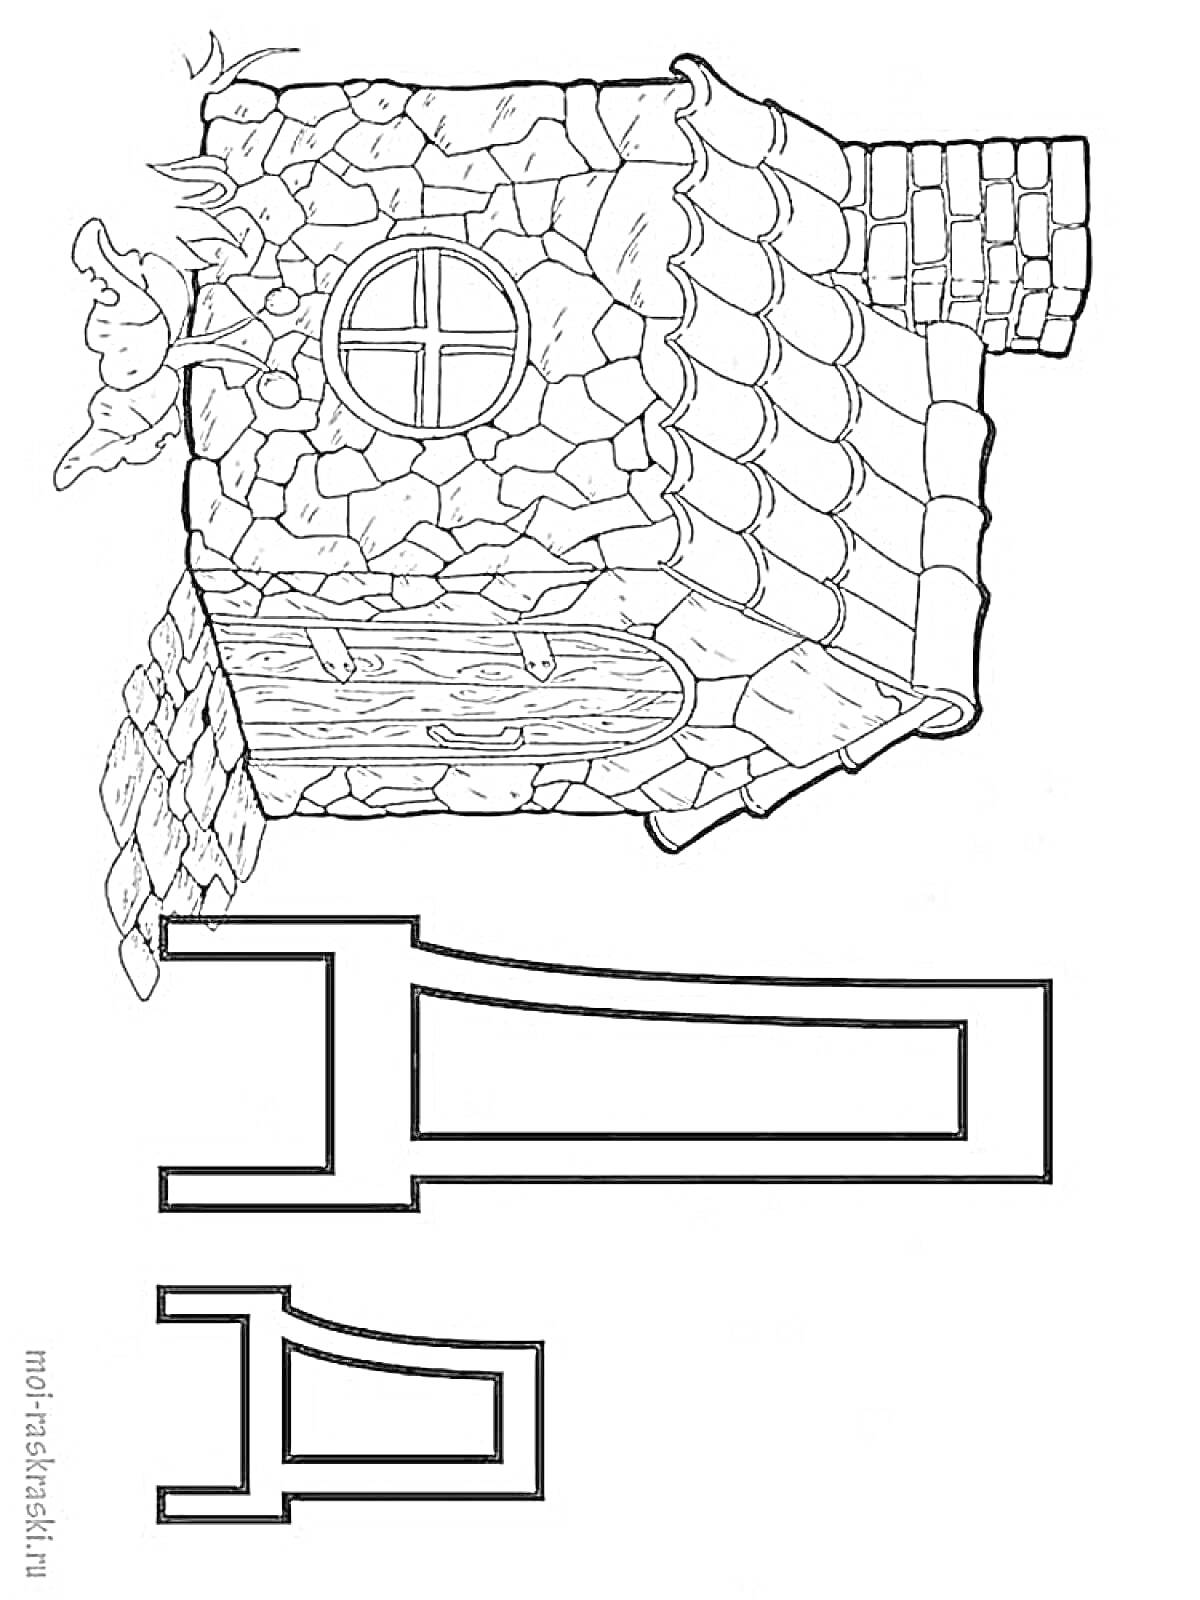 Буква Д с изображением домика, петуха и забора